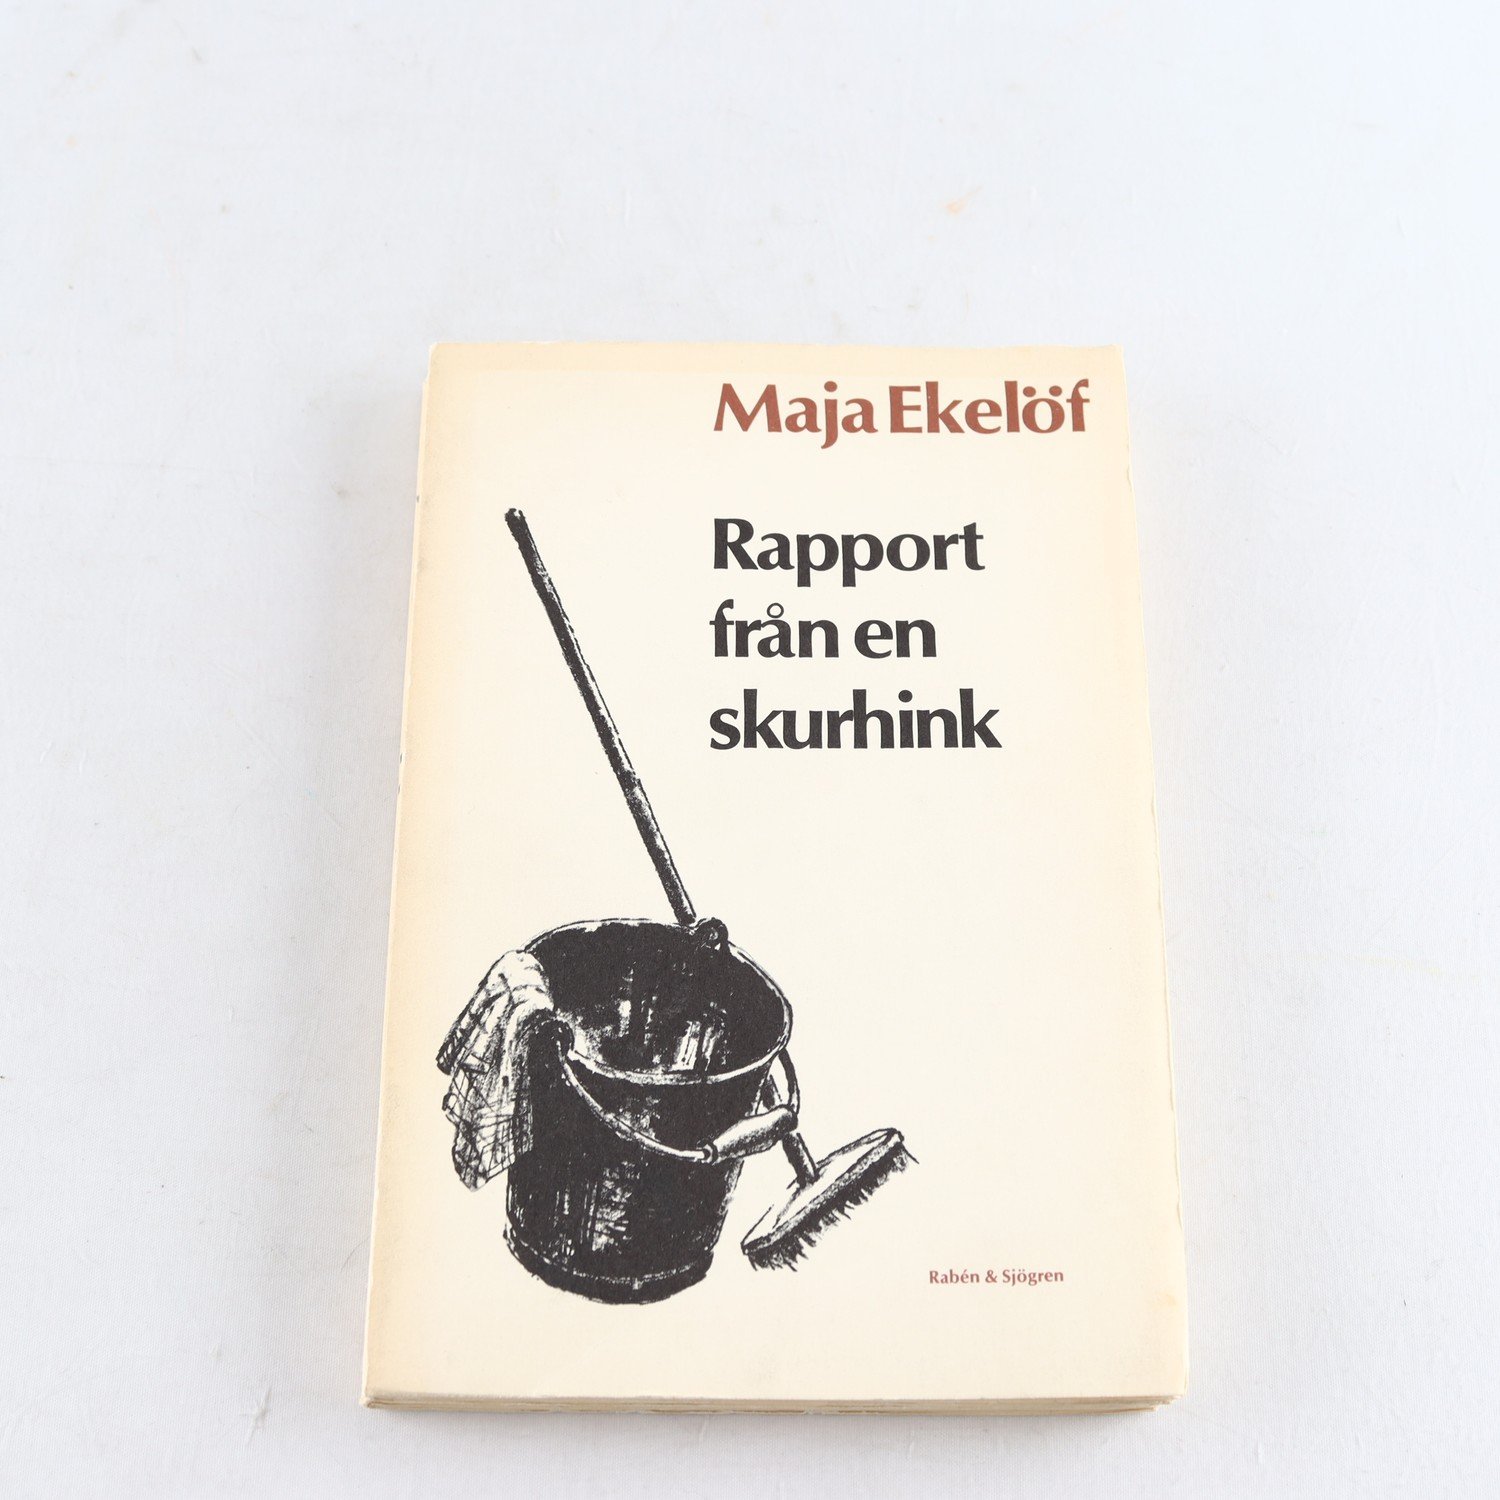 Maja Eklöf, Rapport från en skurhink